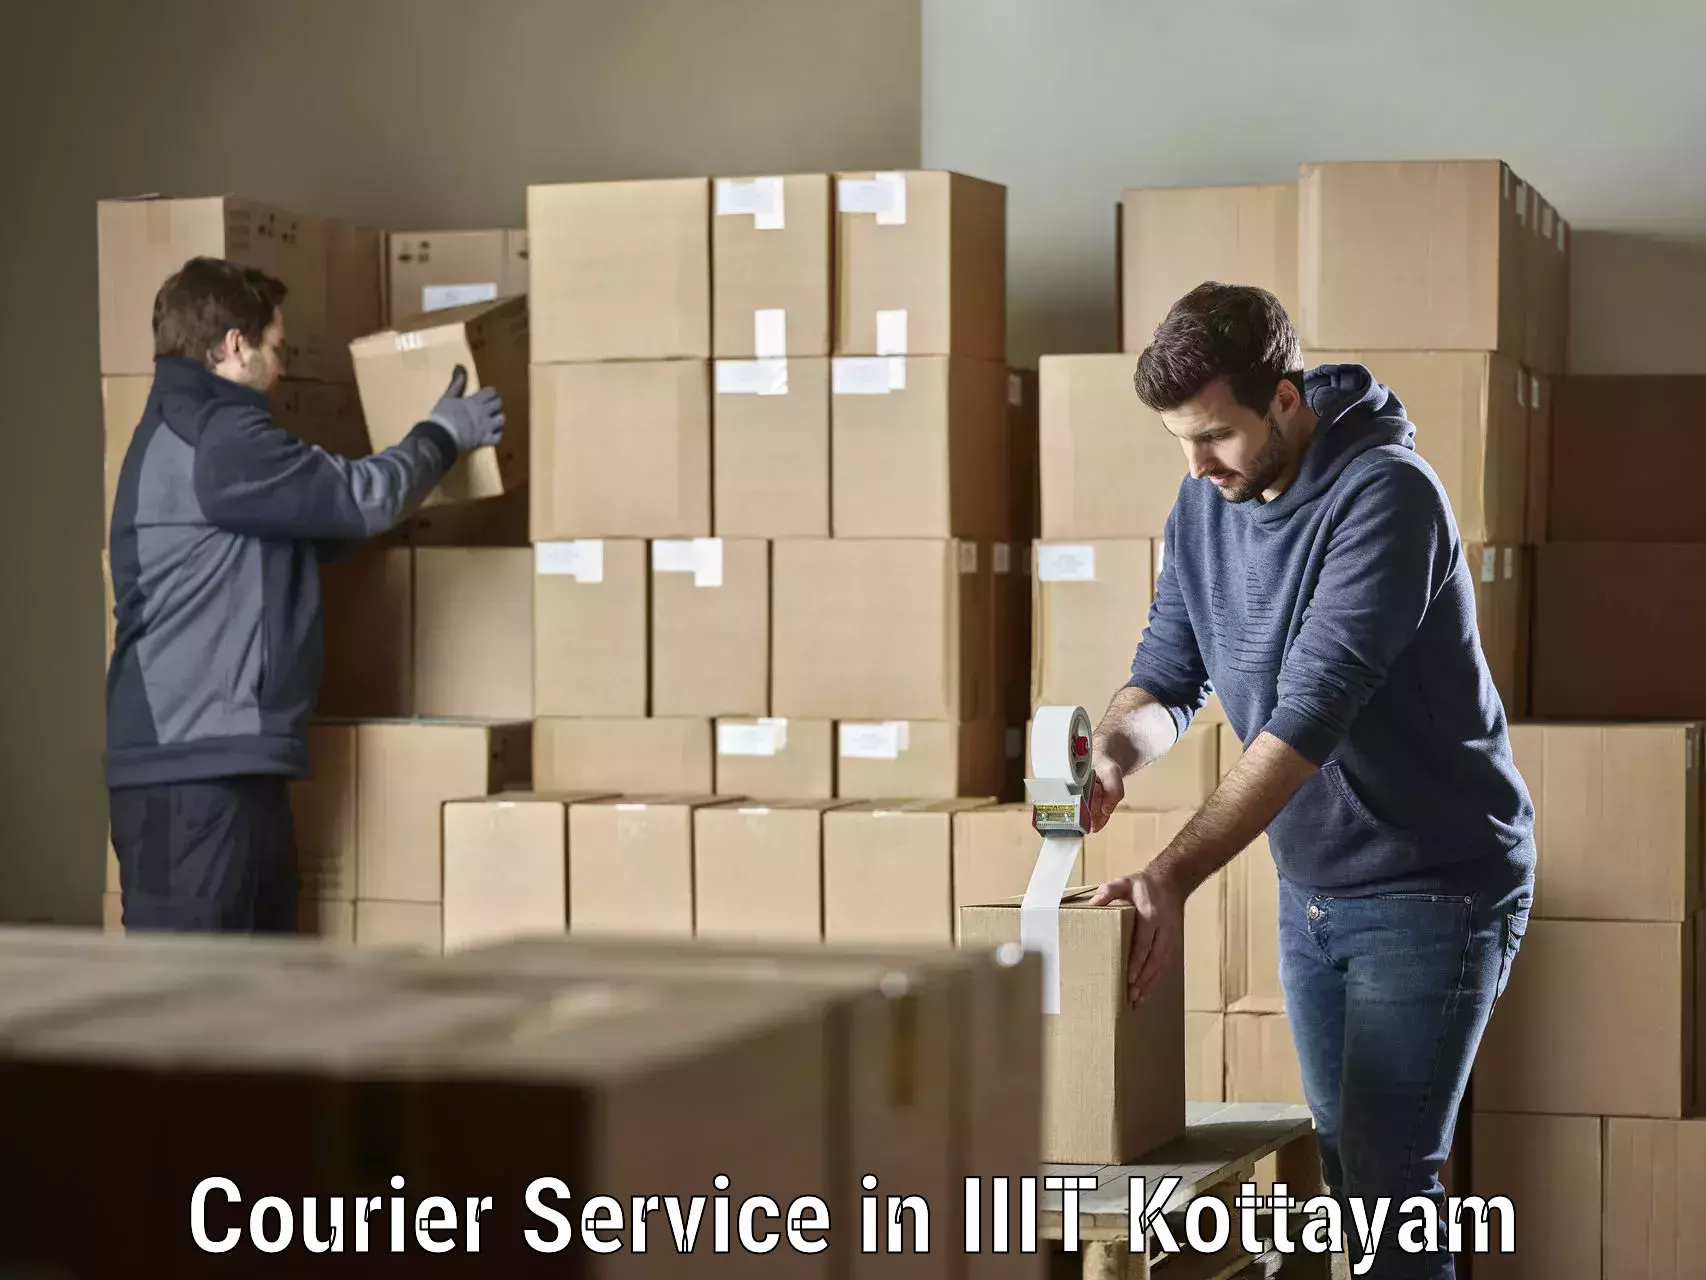 Digital courier platforms in IIIT Kottayam